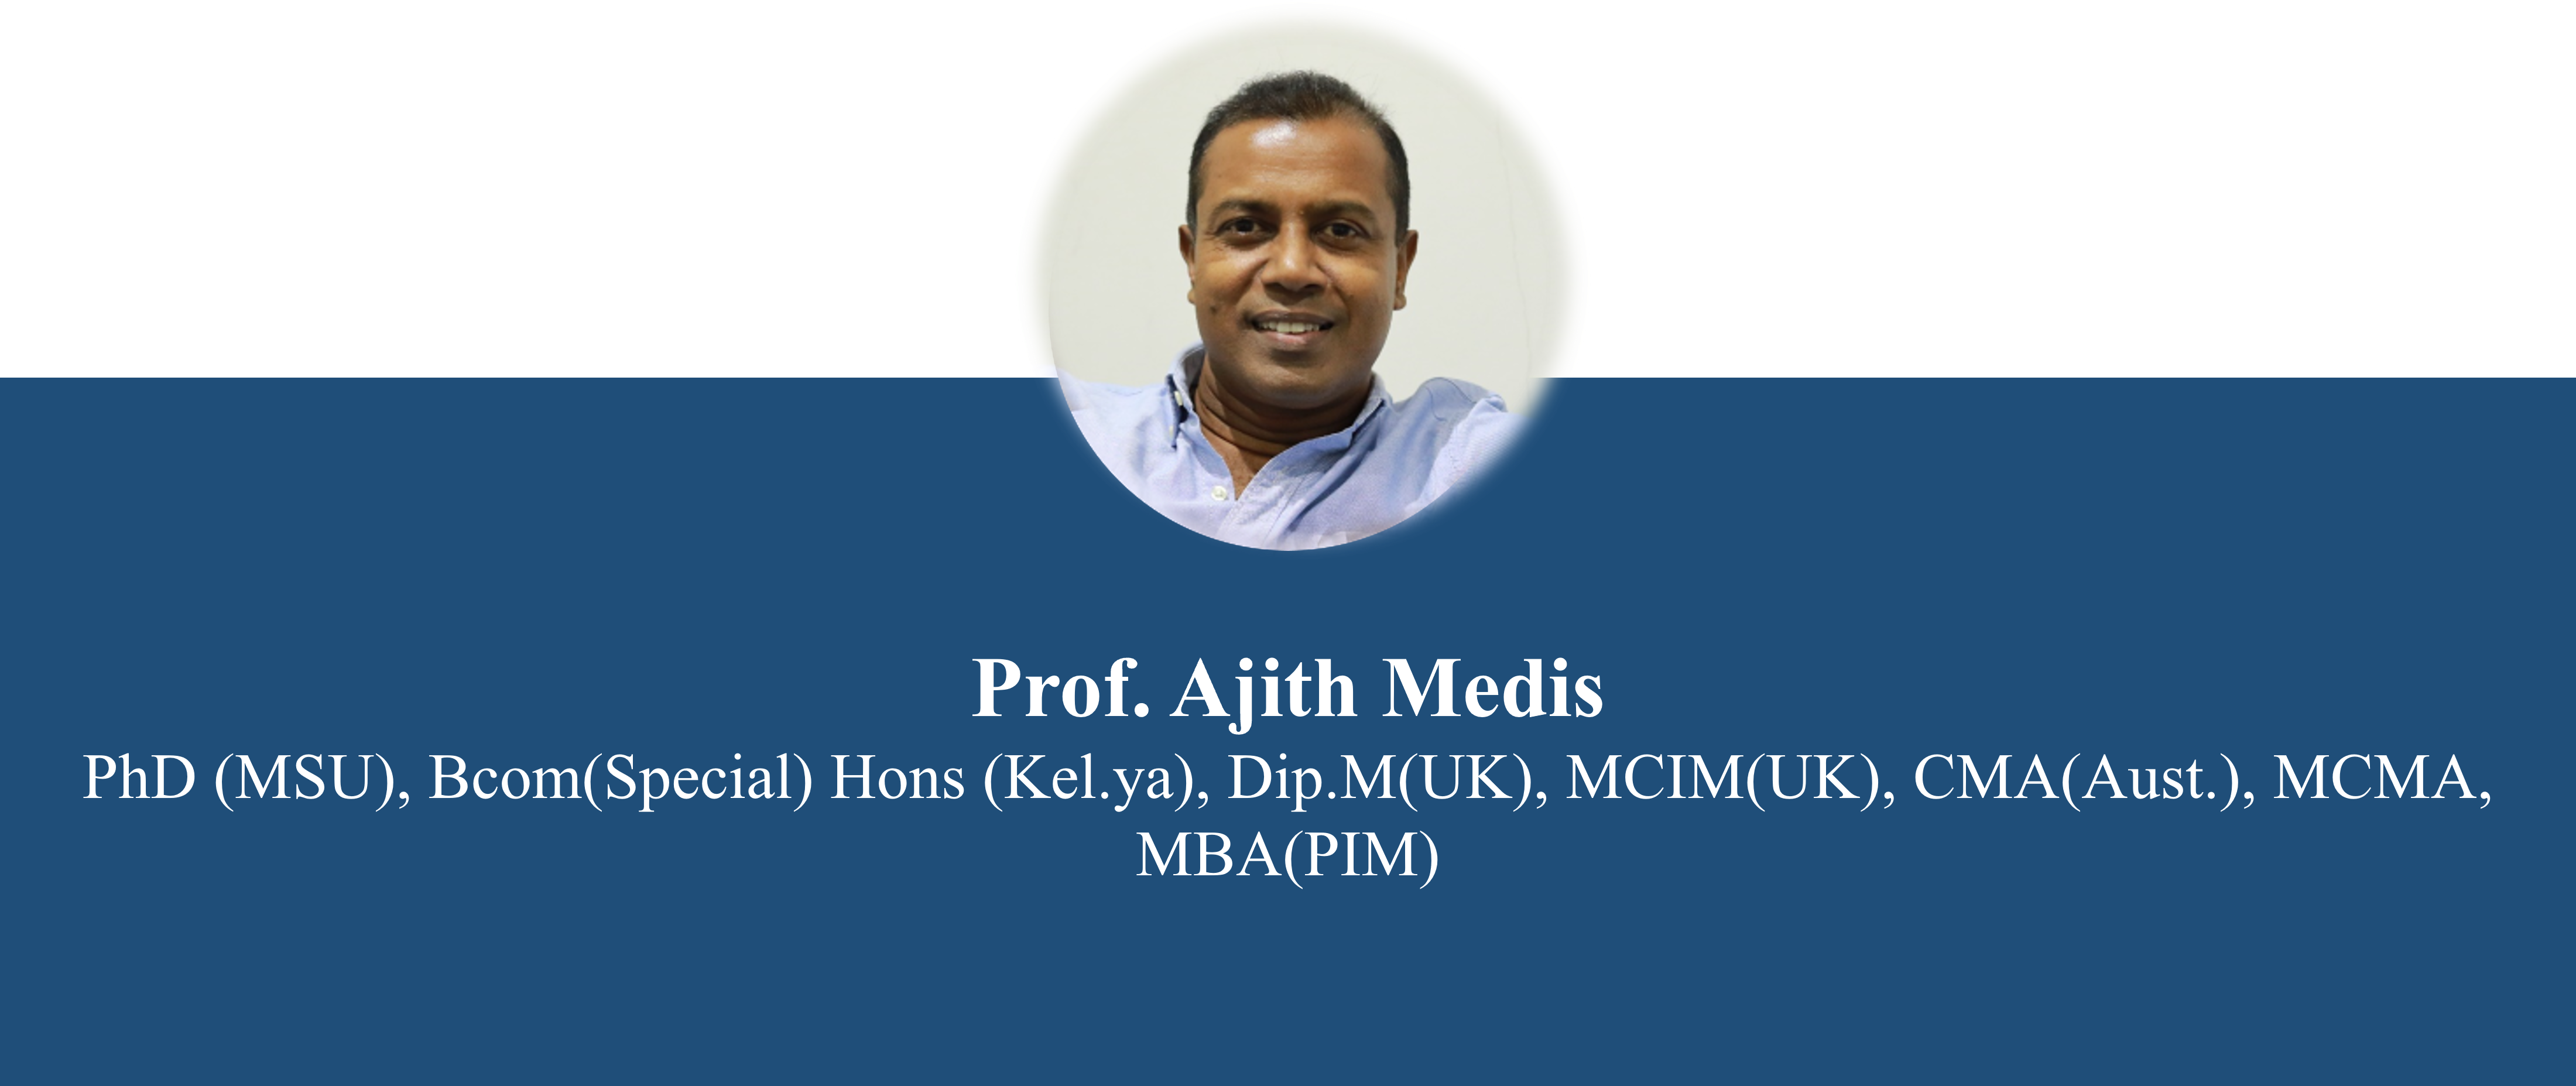 prof.-ajith-medis.png